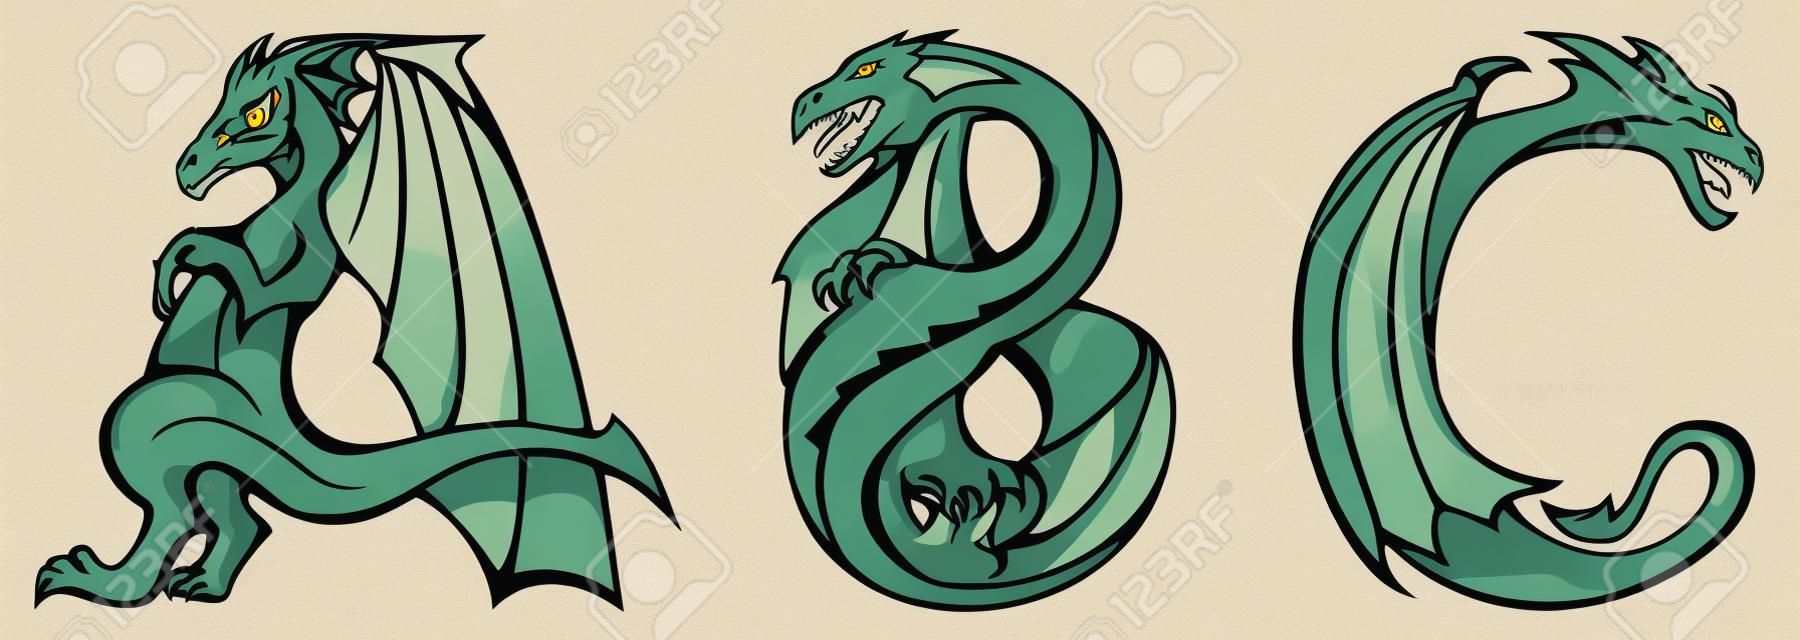 ドラゴンのアルファベット、手紙 A のシリーズ、B, C, ファンタジー ドラゴン形状フォント、ベクトル イラスト